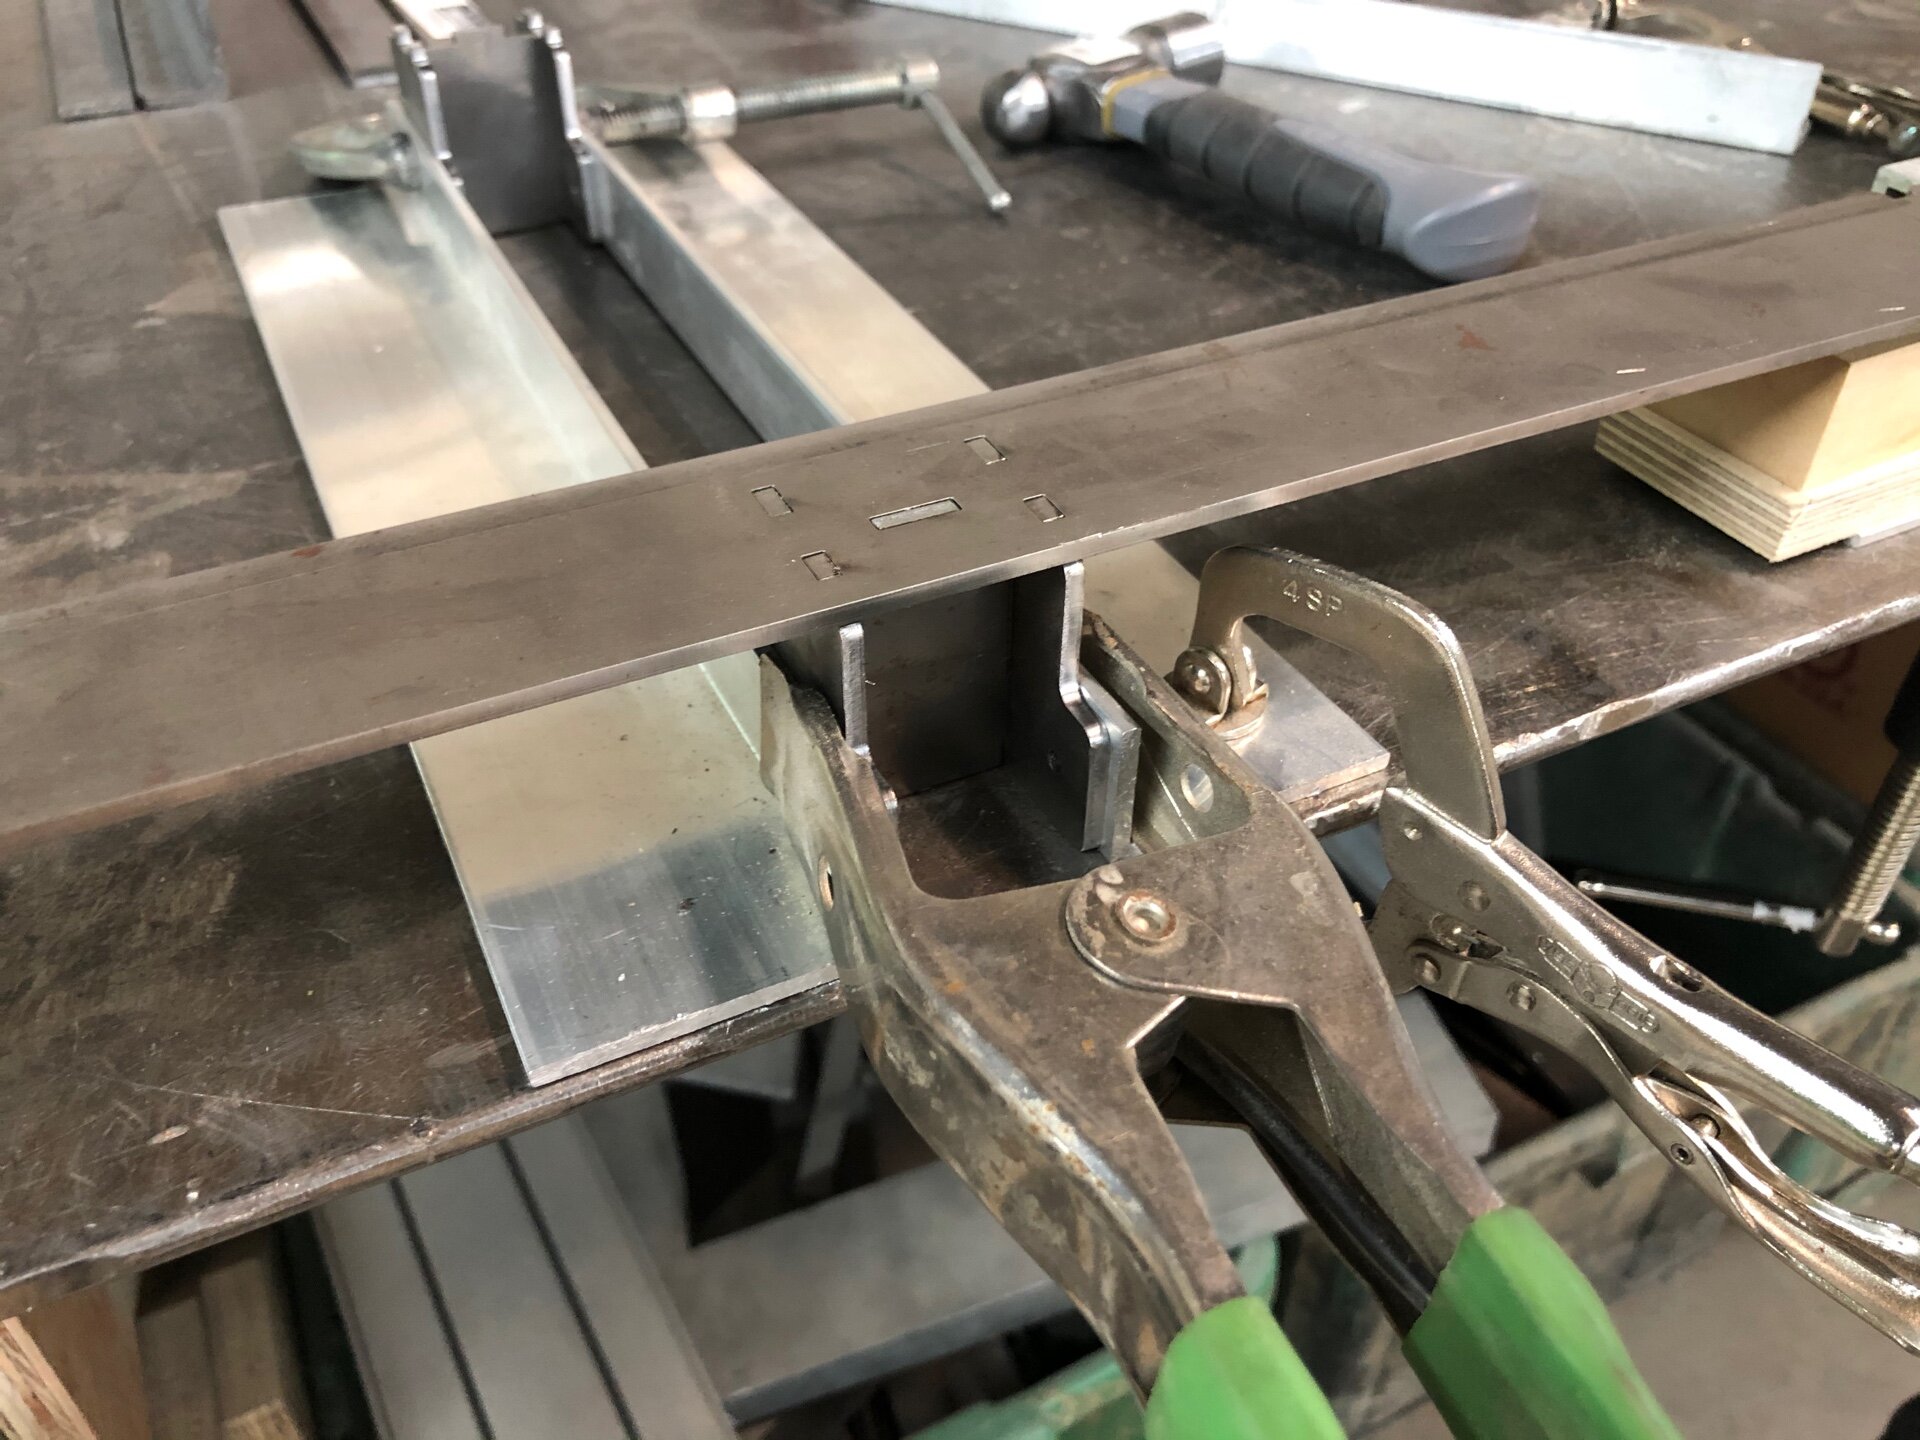 Laser-cut steel pieces in a welding fixture